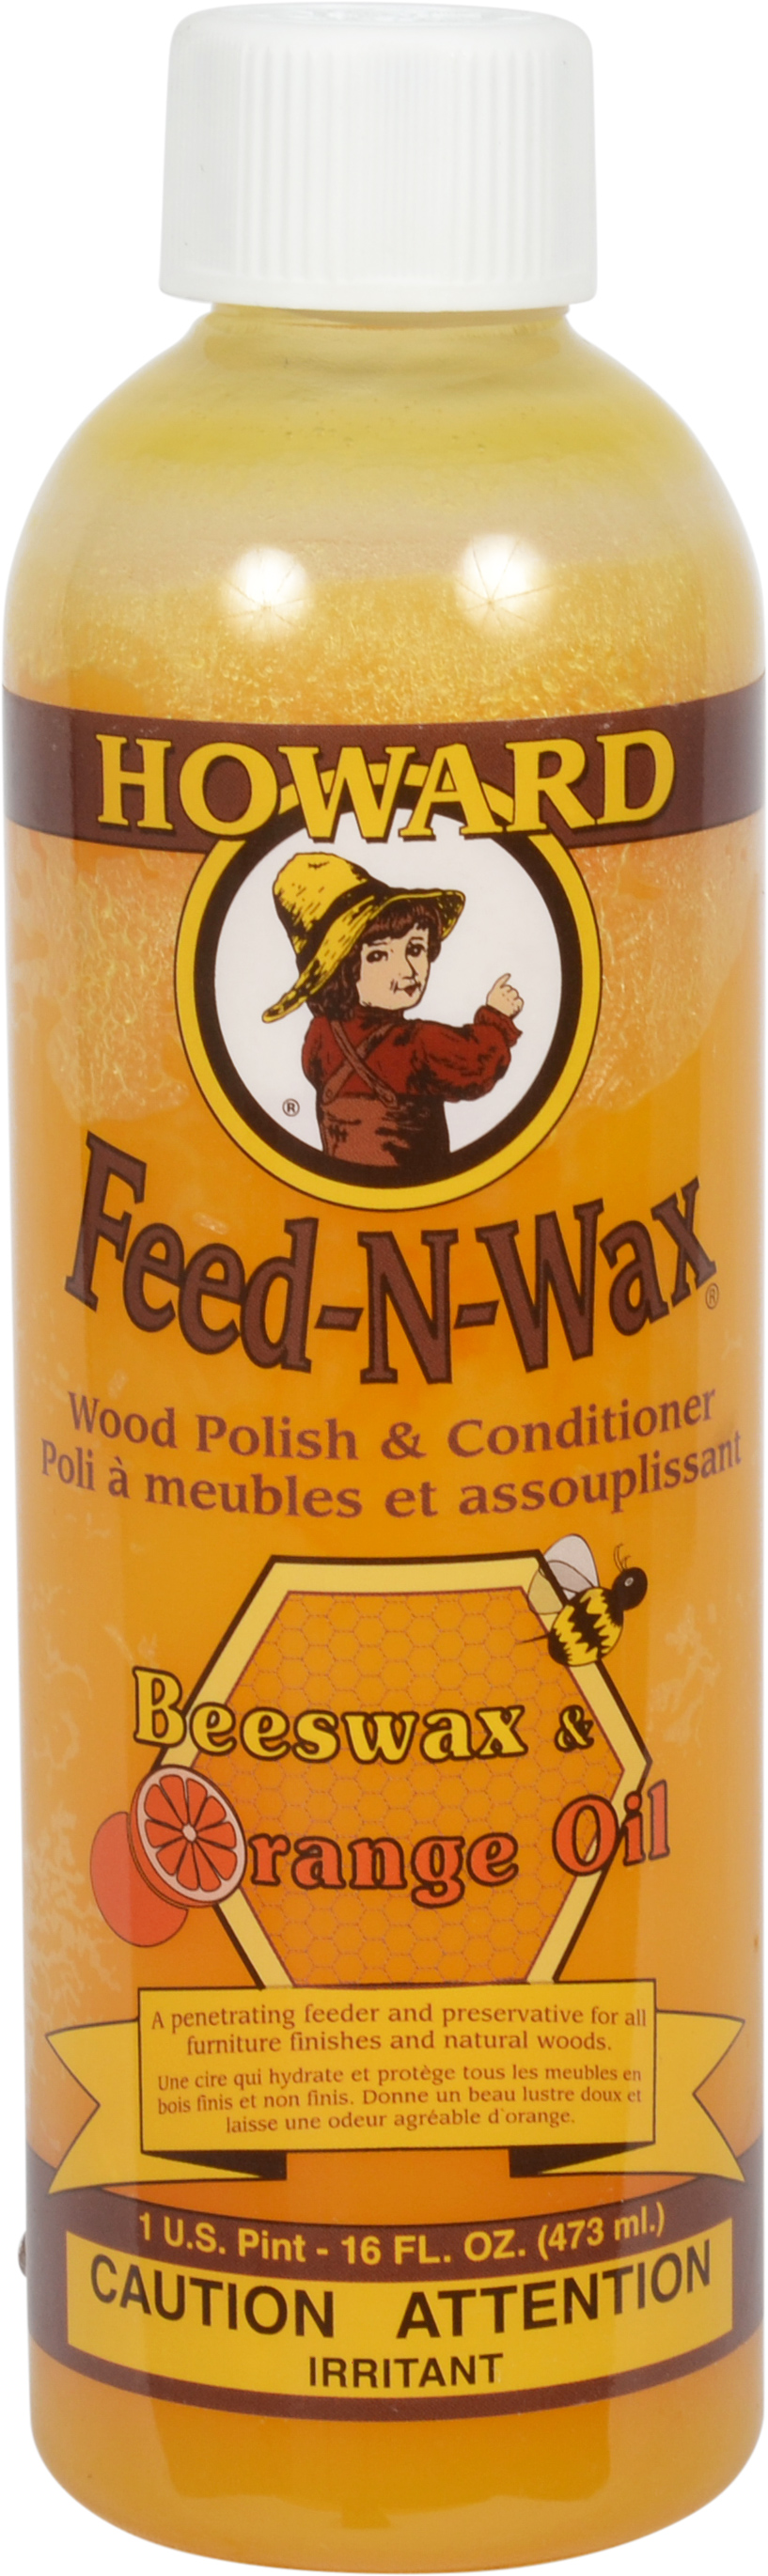 Howard Feed-N-Wax Wood Polish & Conditioner